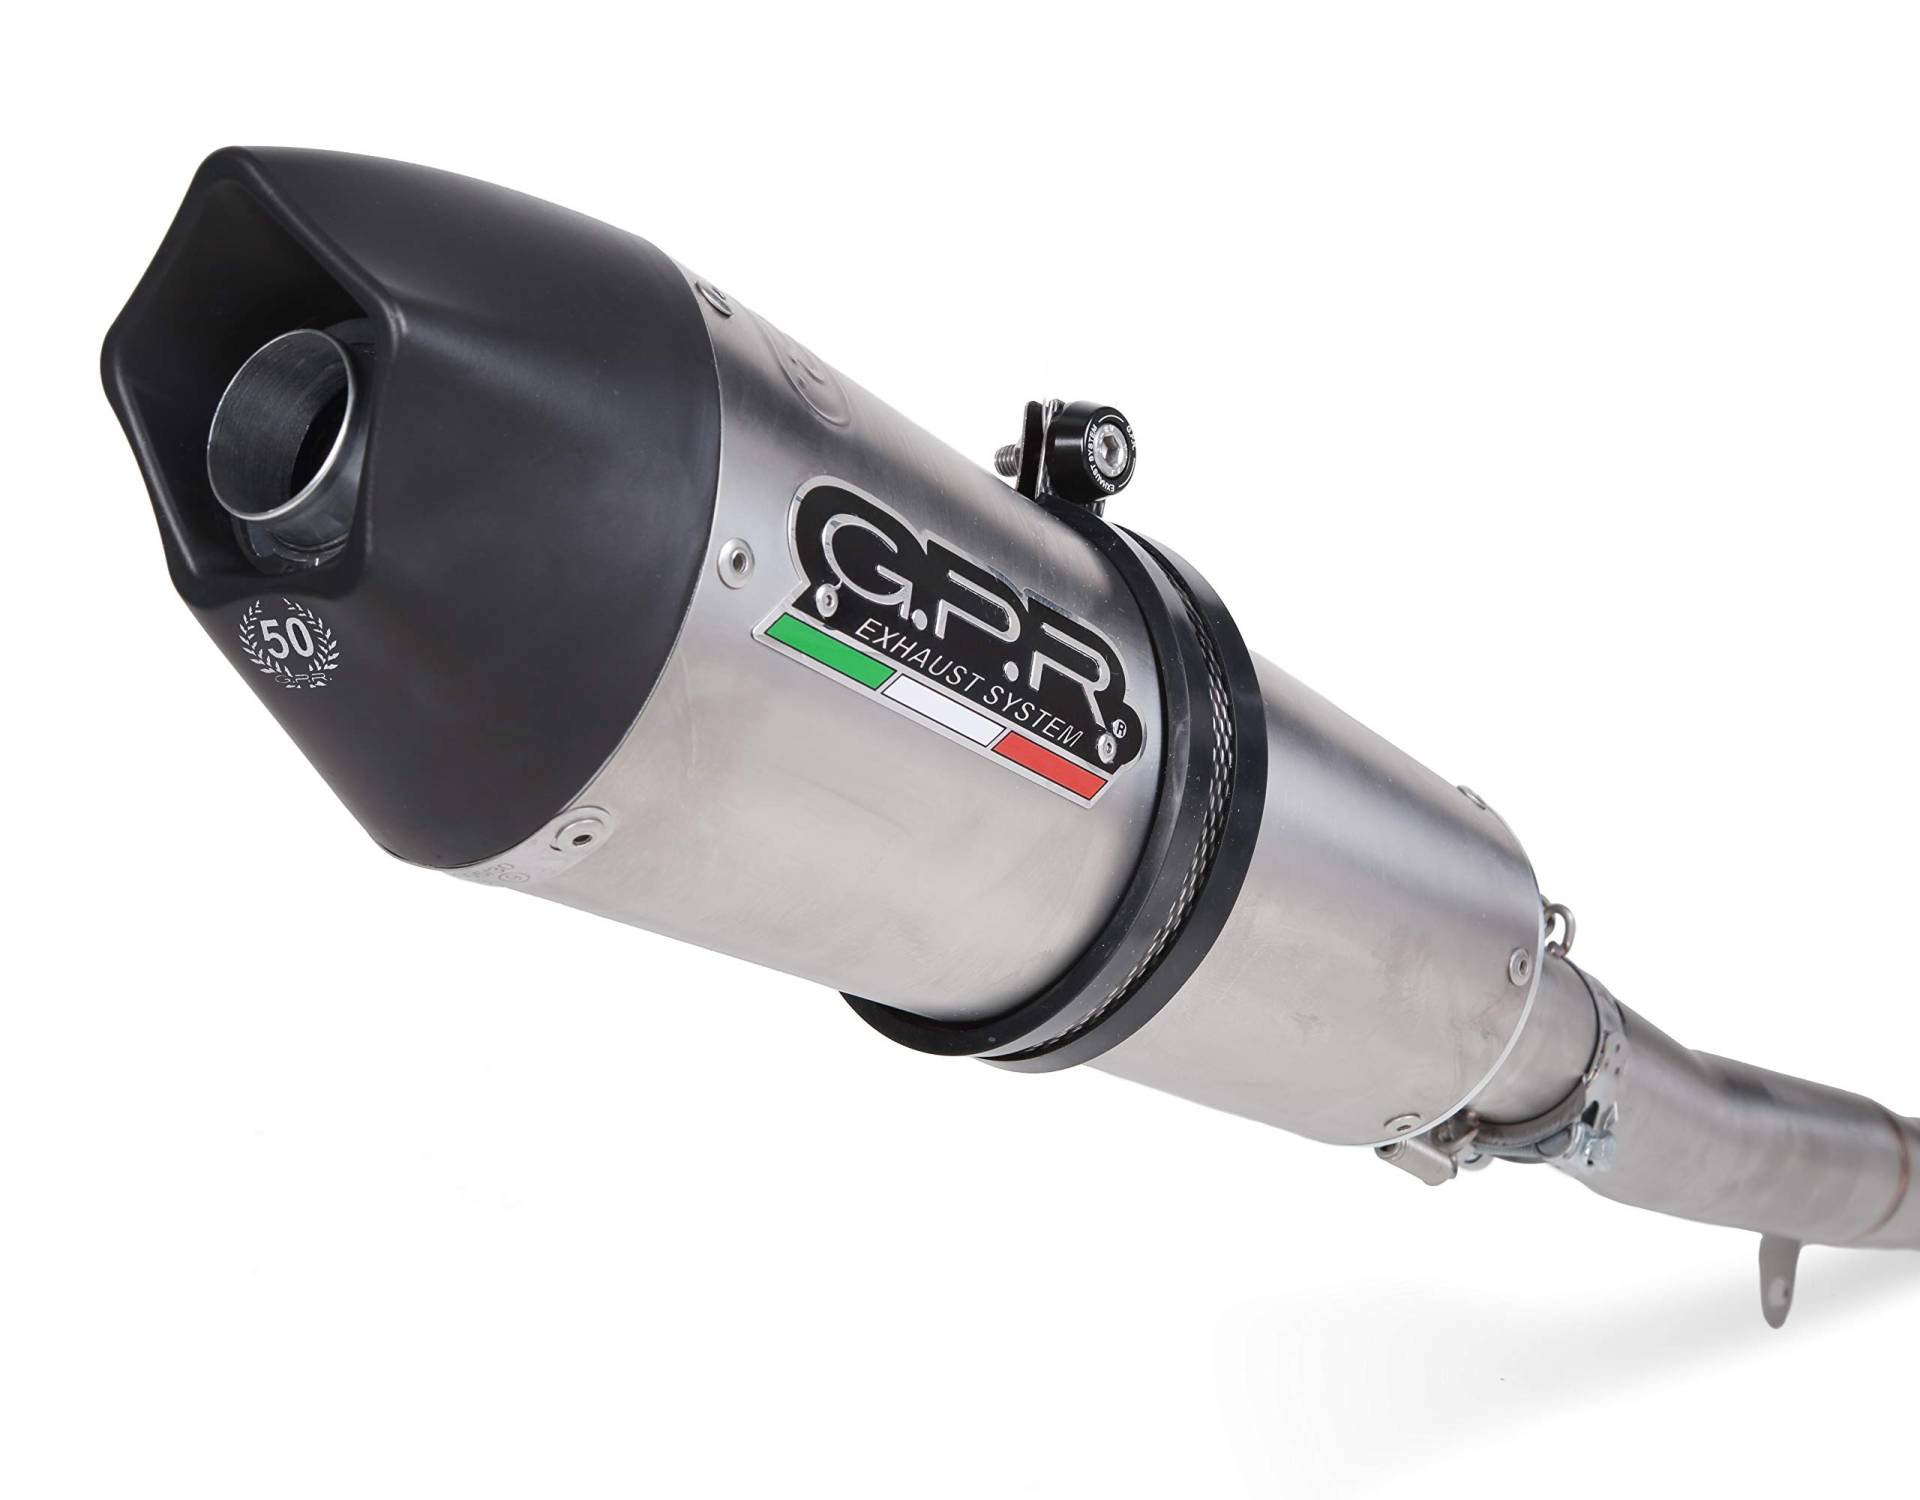 GPR Italien Anlage komplett geprüft und katalysiert kompatibel mit BMW S 1000 RR 2015/16 von GPR